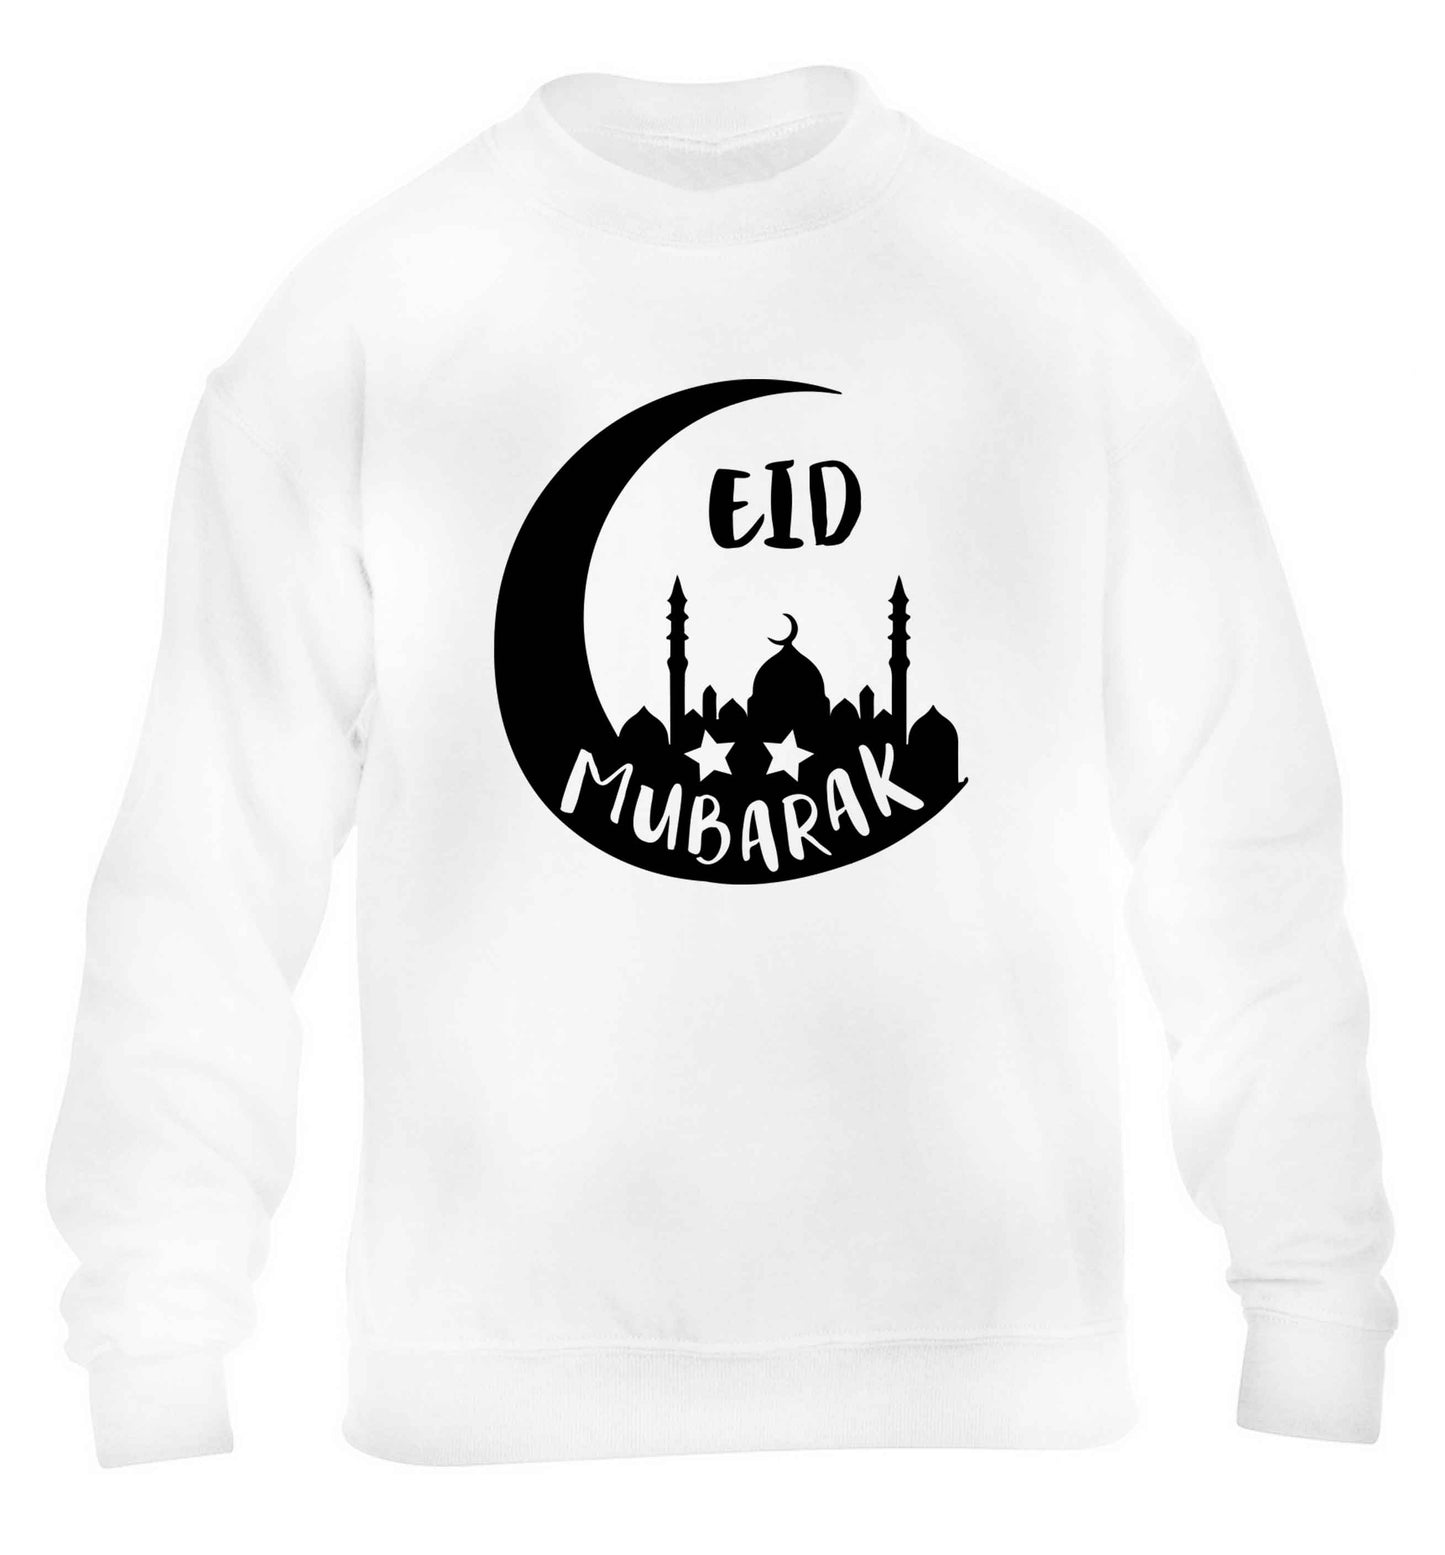 Eid mubarak children's white sweater 12-13 Years